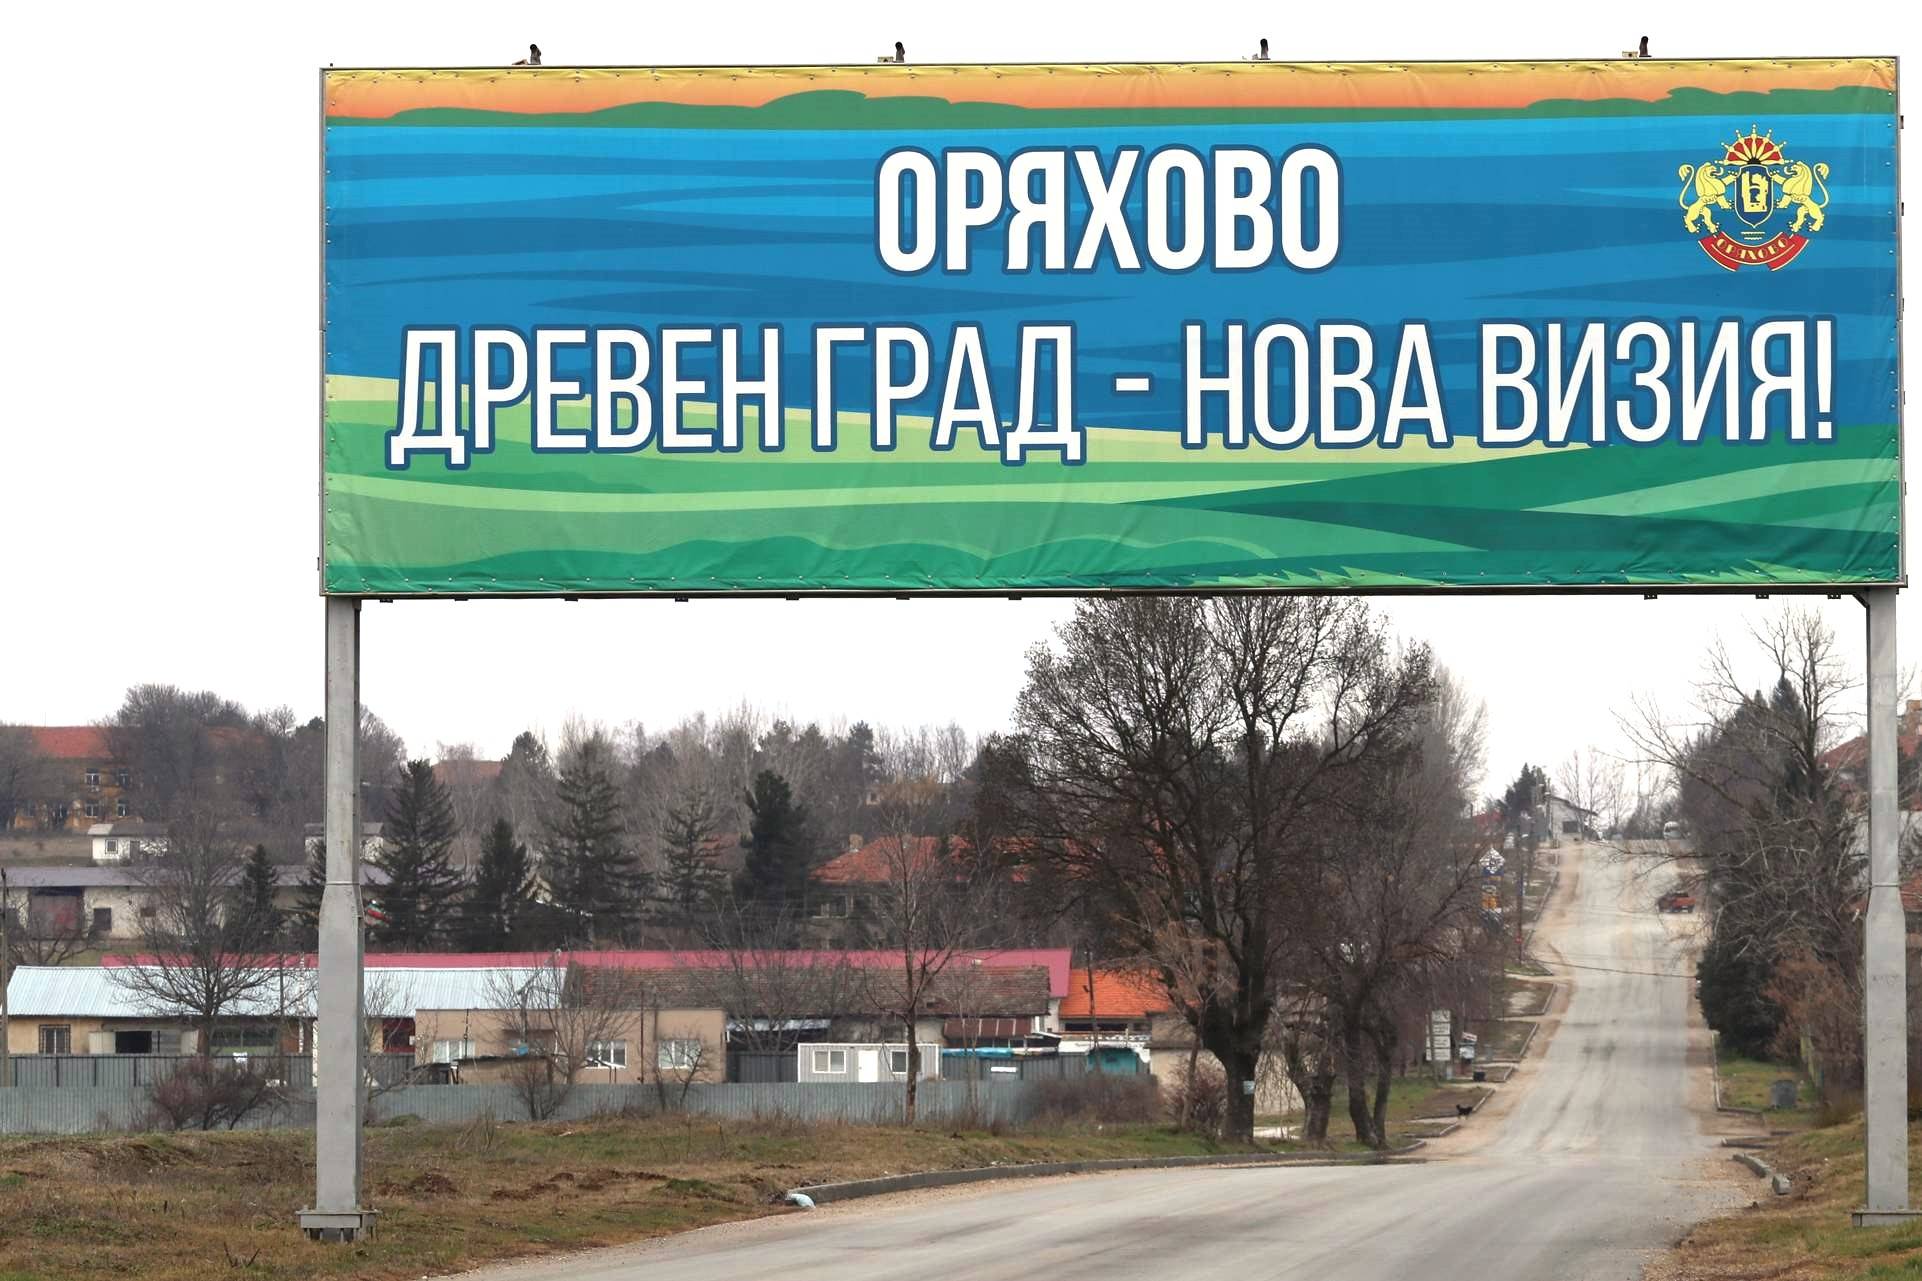 Вход на град Оряхово